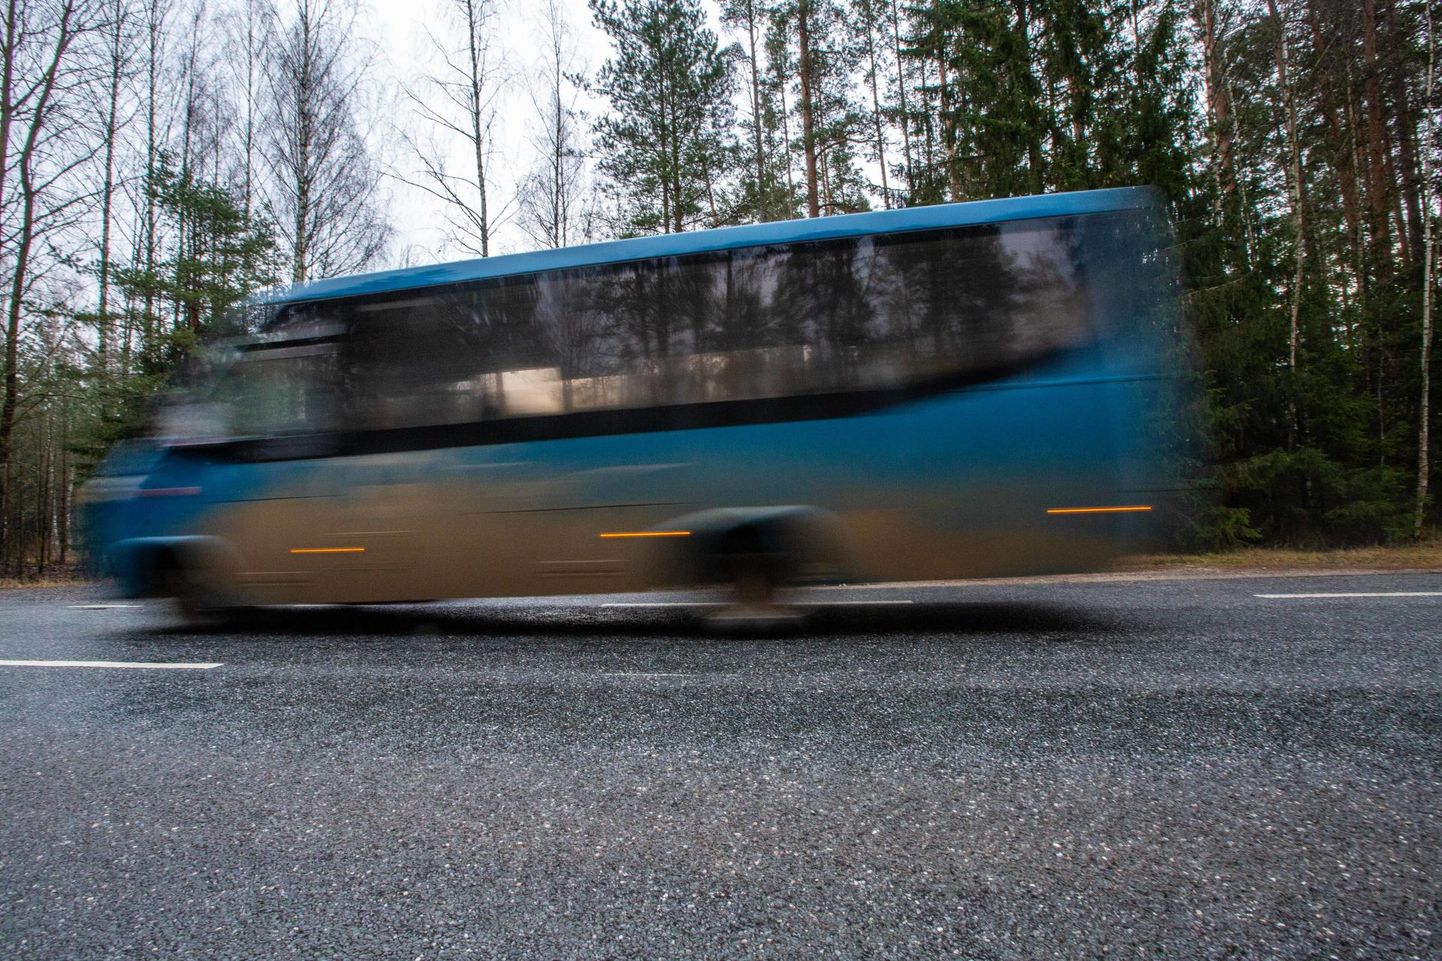 Muutused tulenevad bussijuhtide ettepanekust, et muuta sõiduaeg kiiremaks.